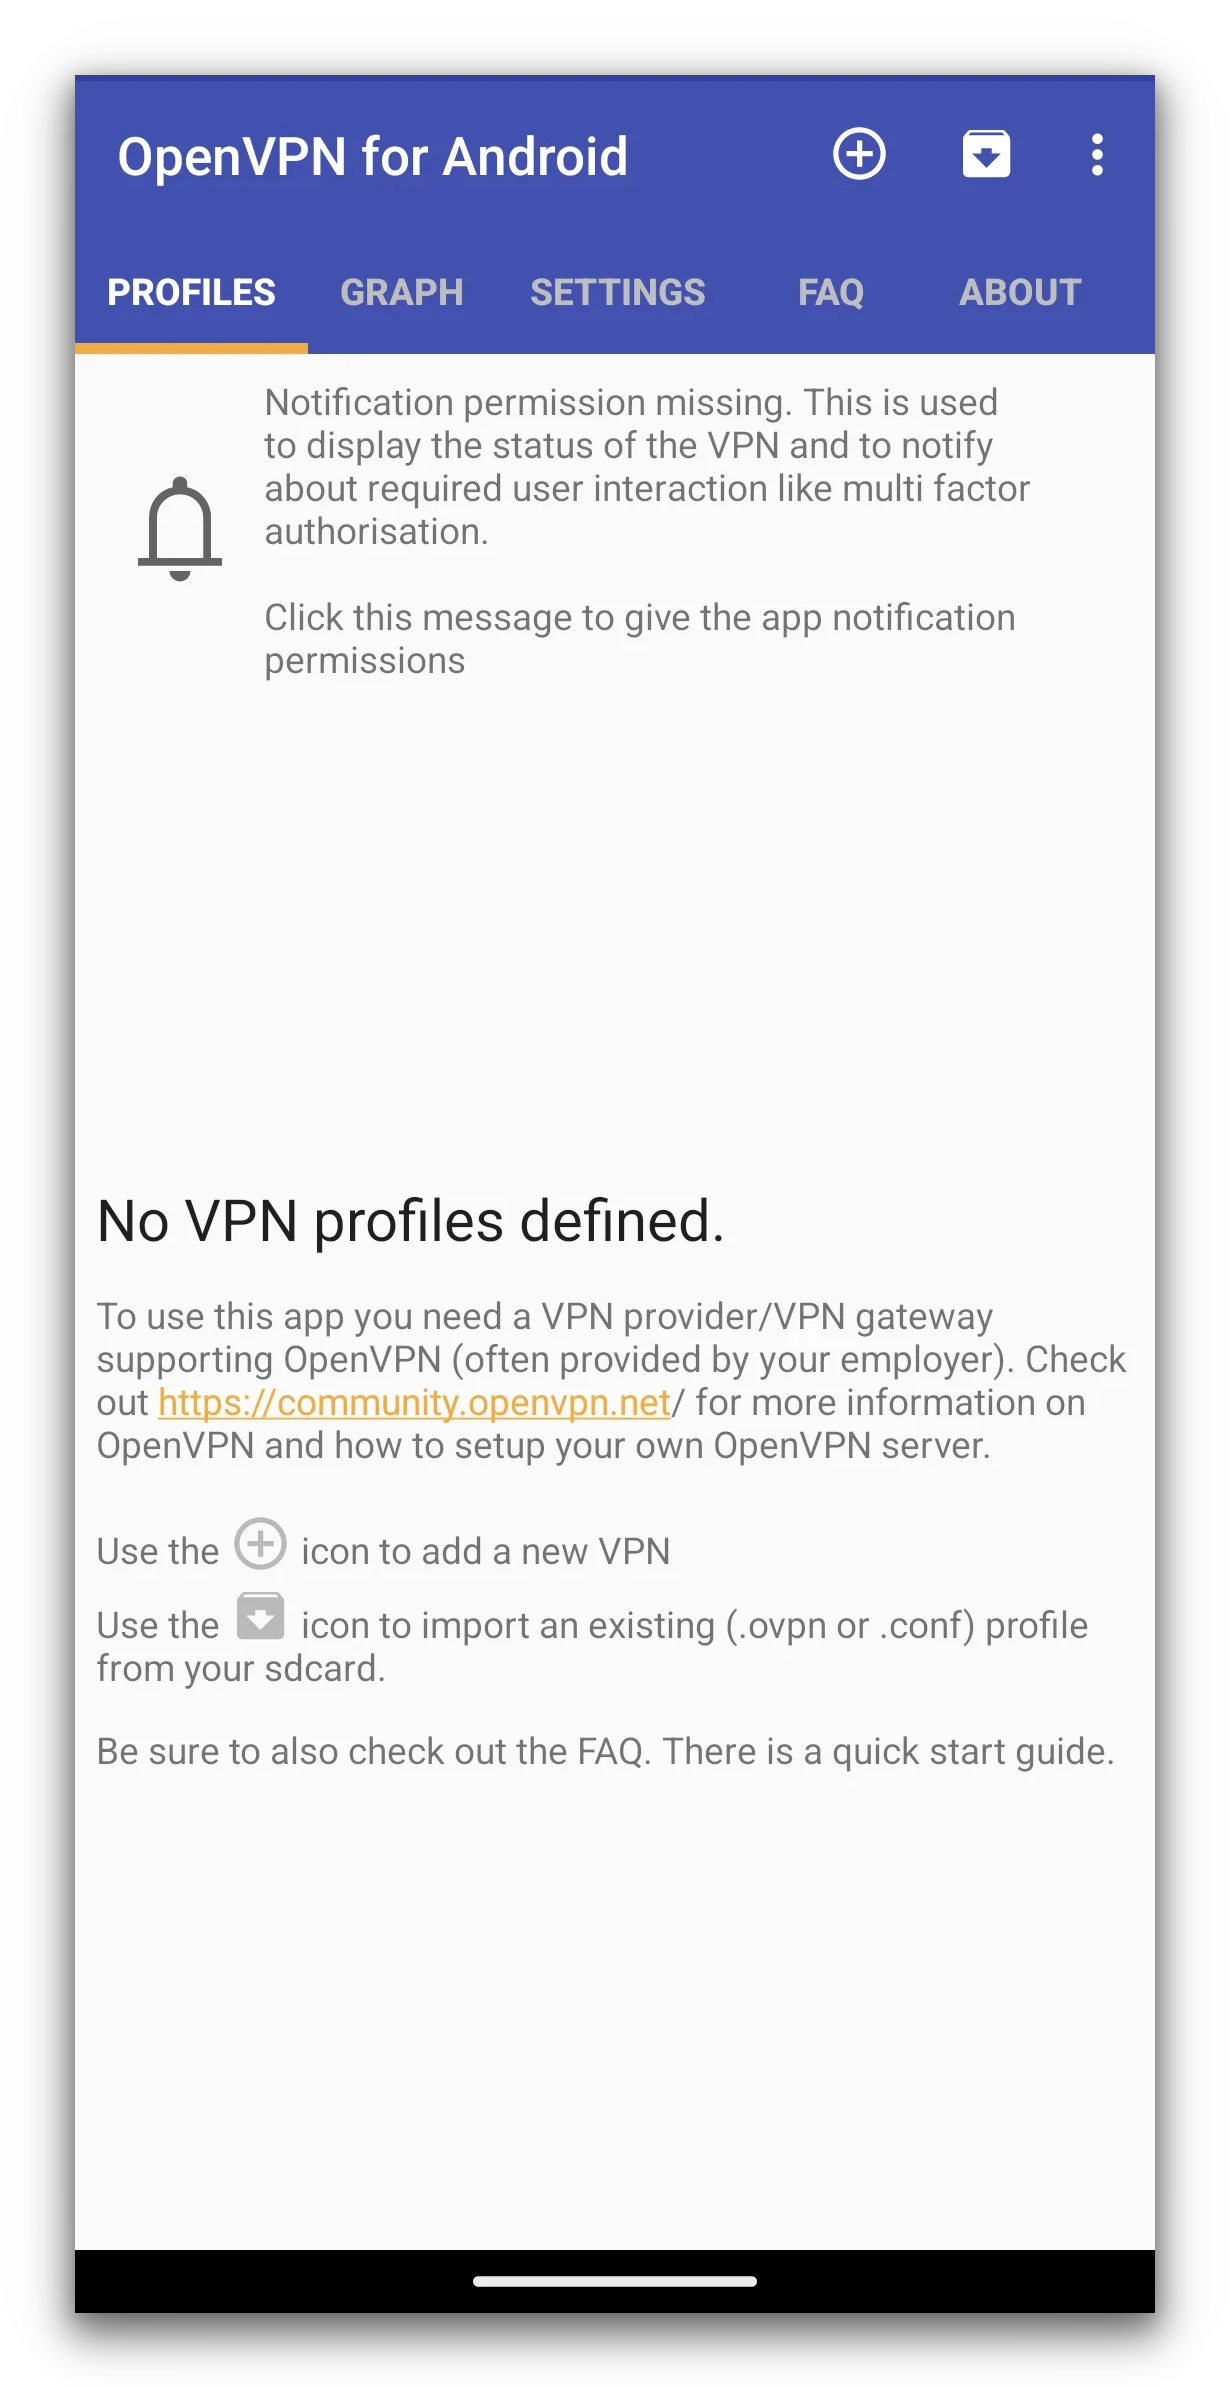 Ekran główny OpenVPN dla Androida